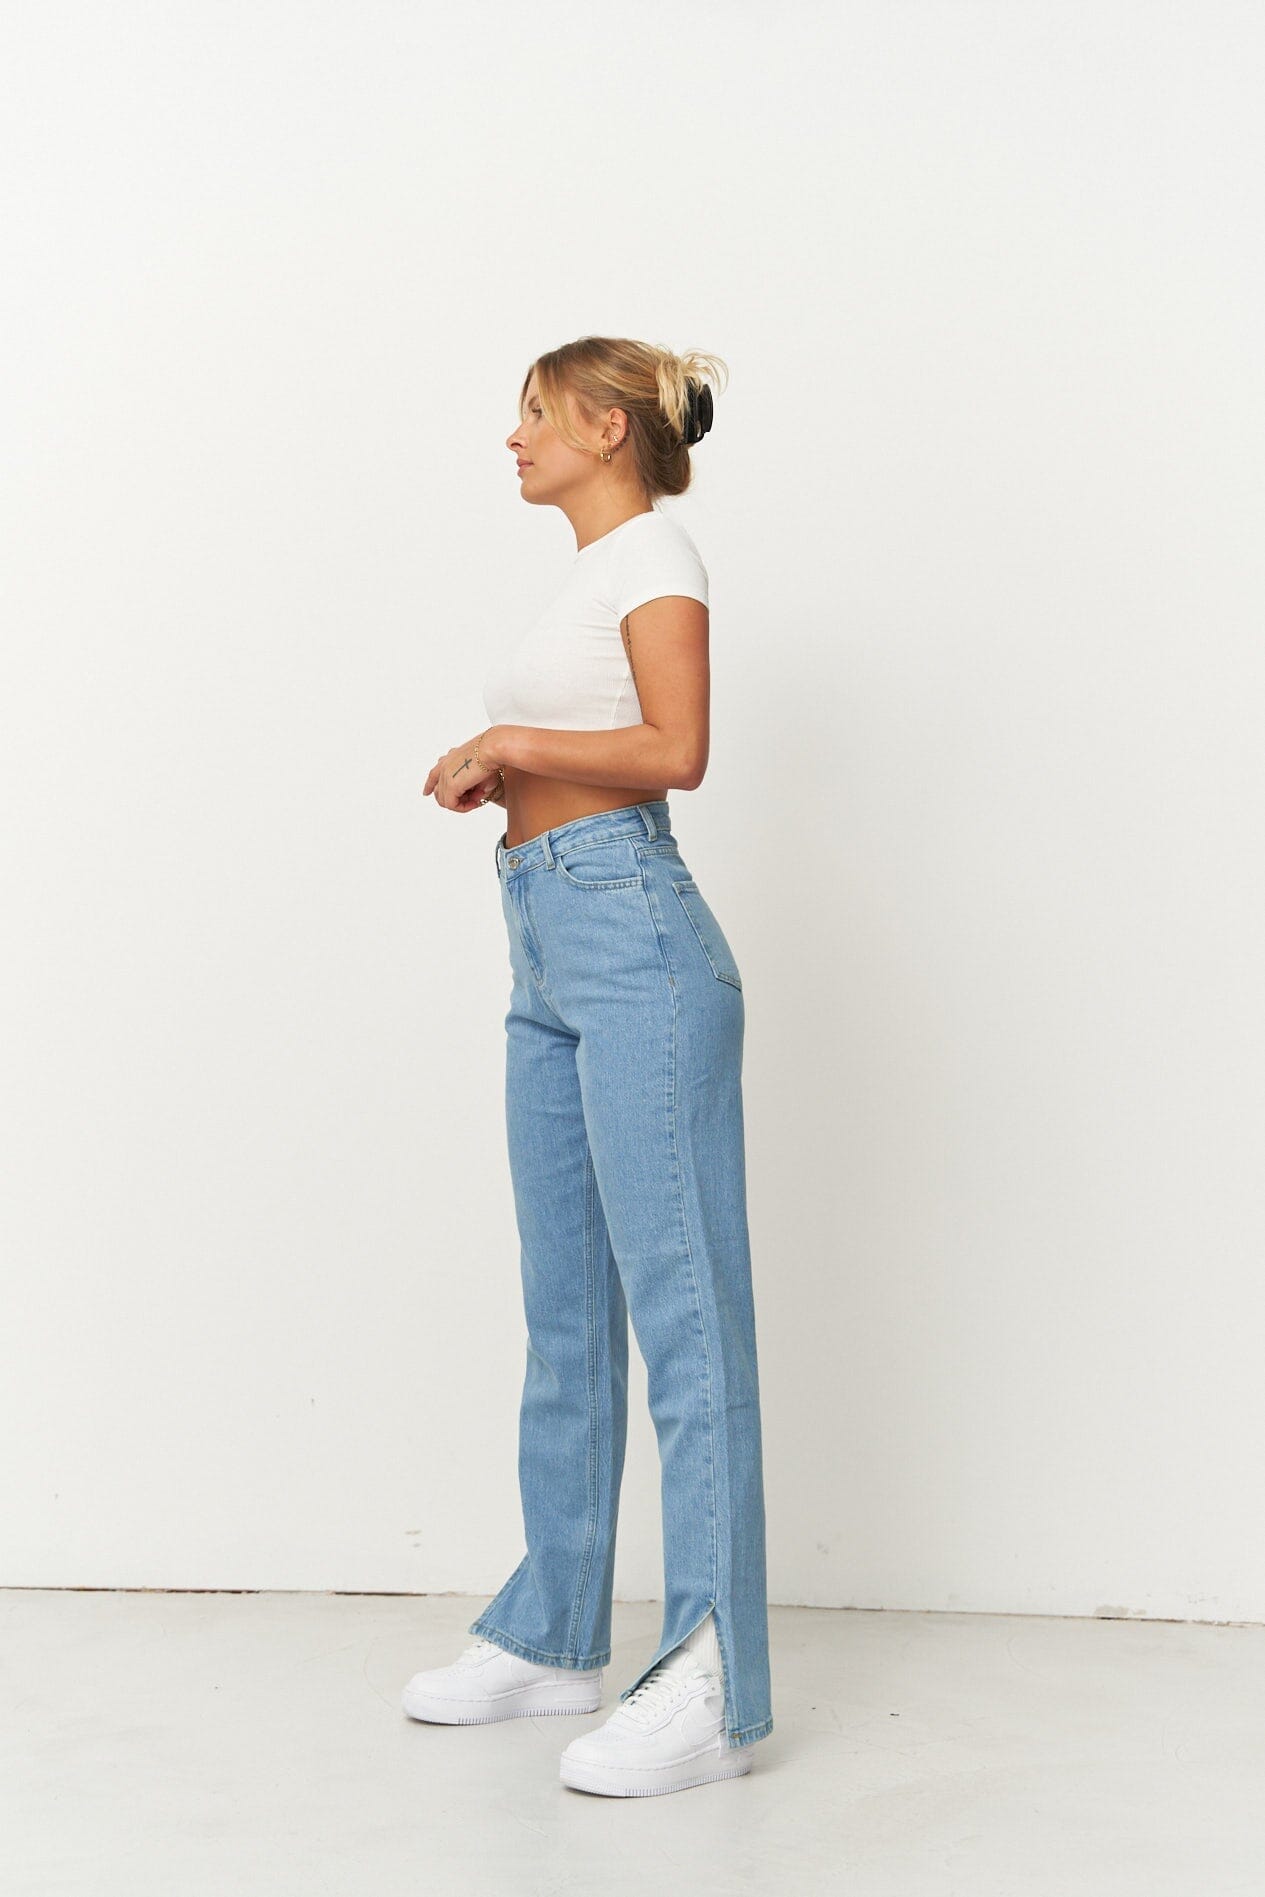 Hellblaue Jeans für Frauen mit einem geraden Schnitt. Hellblaue Denim Jeans für Damen